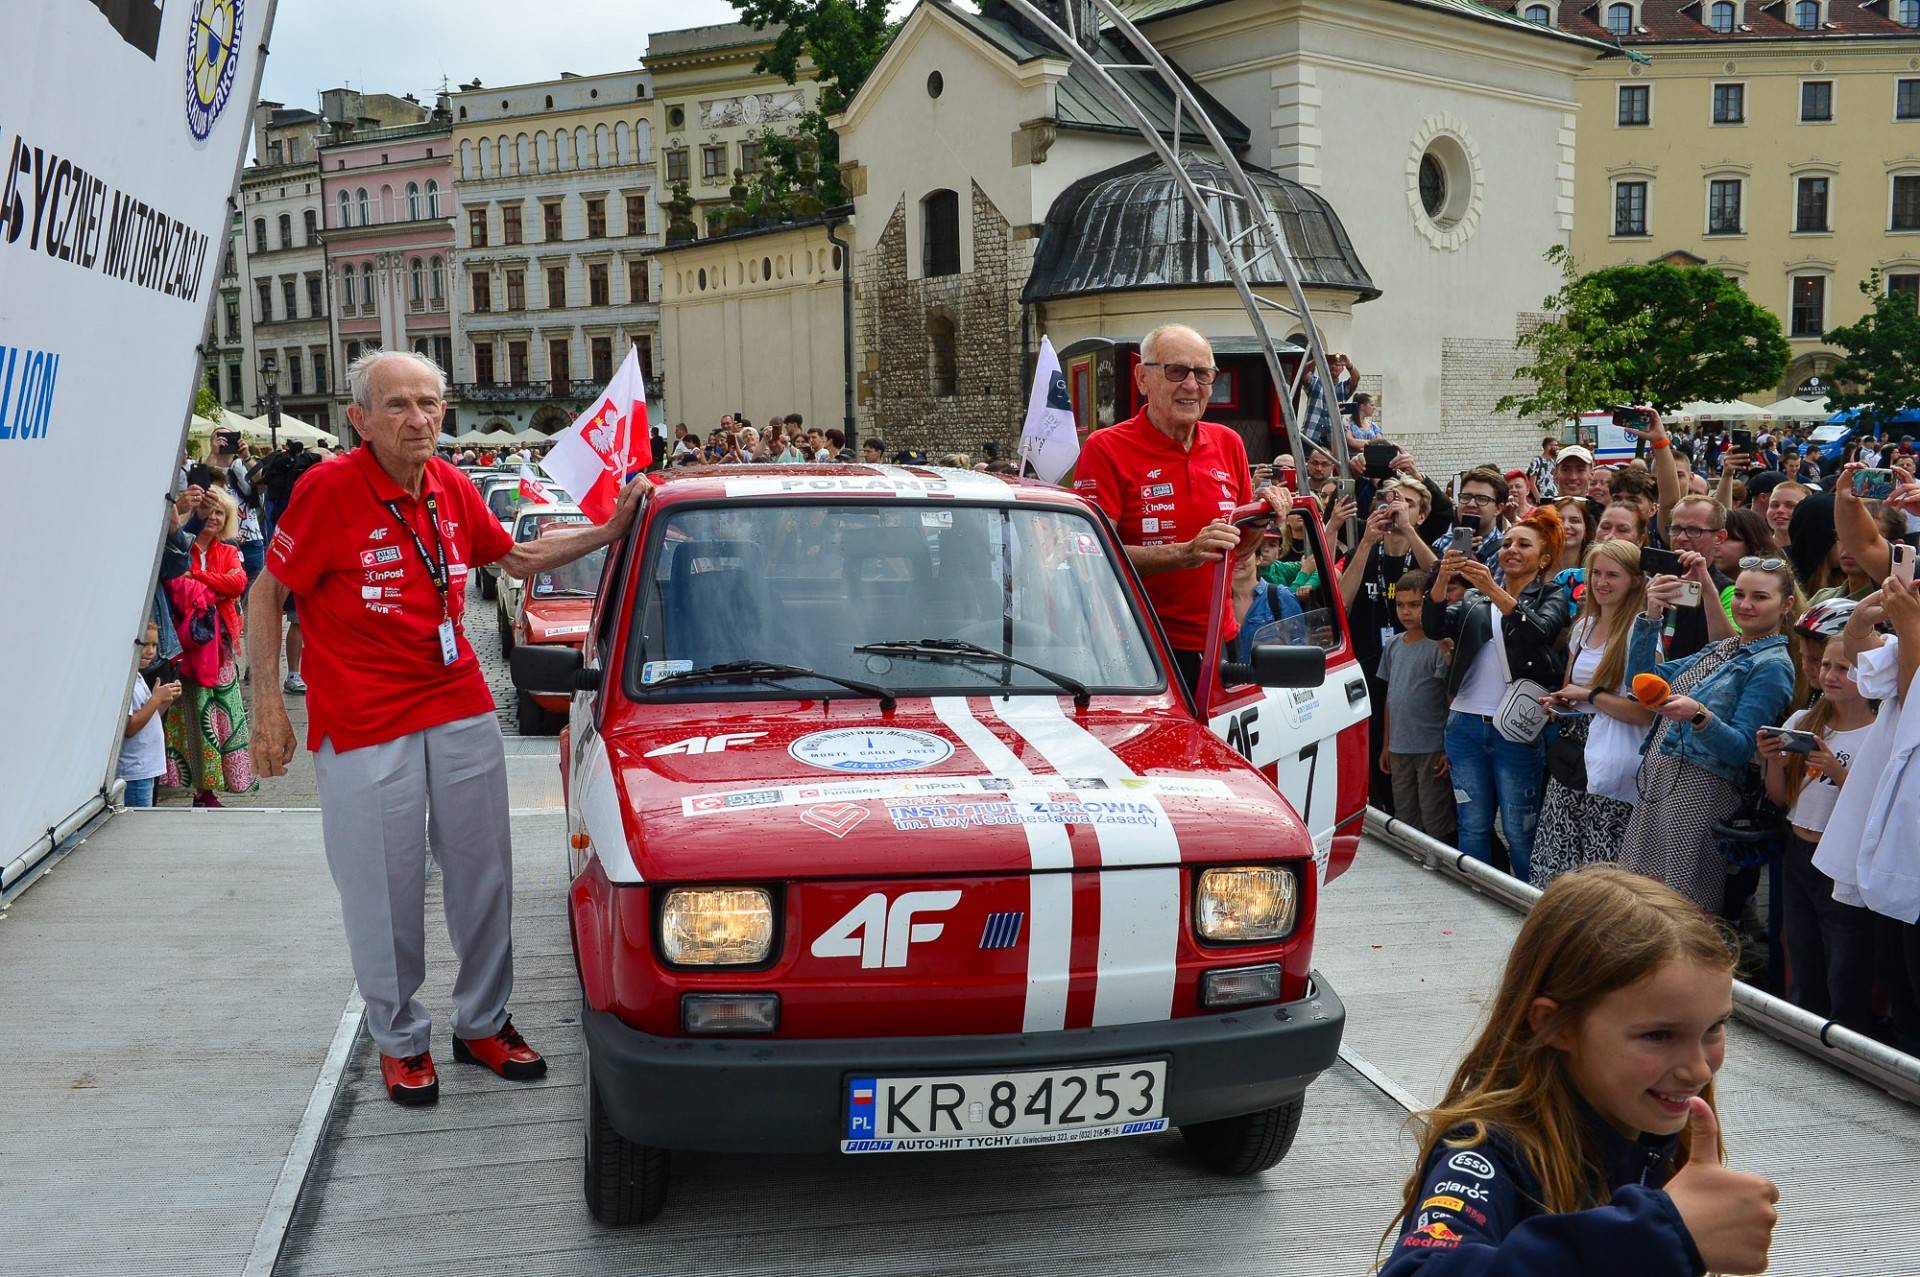 Wielka Wyprawa Maluchów dotarła do Krakowa, najstarszy duet rajdowy na świecie